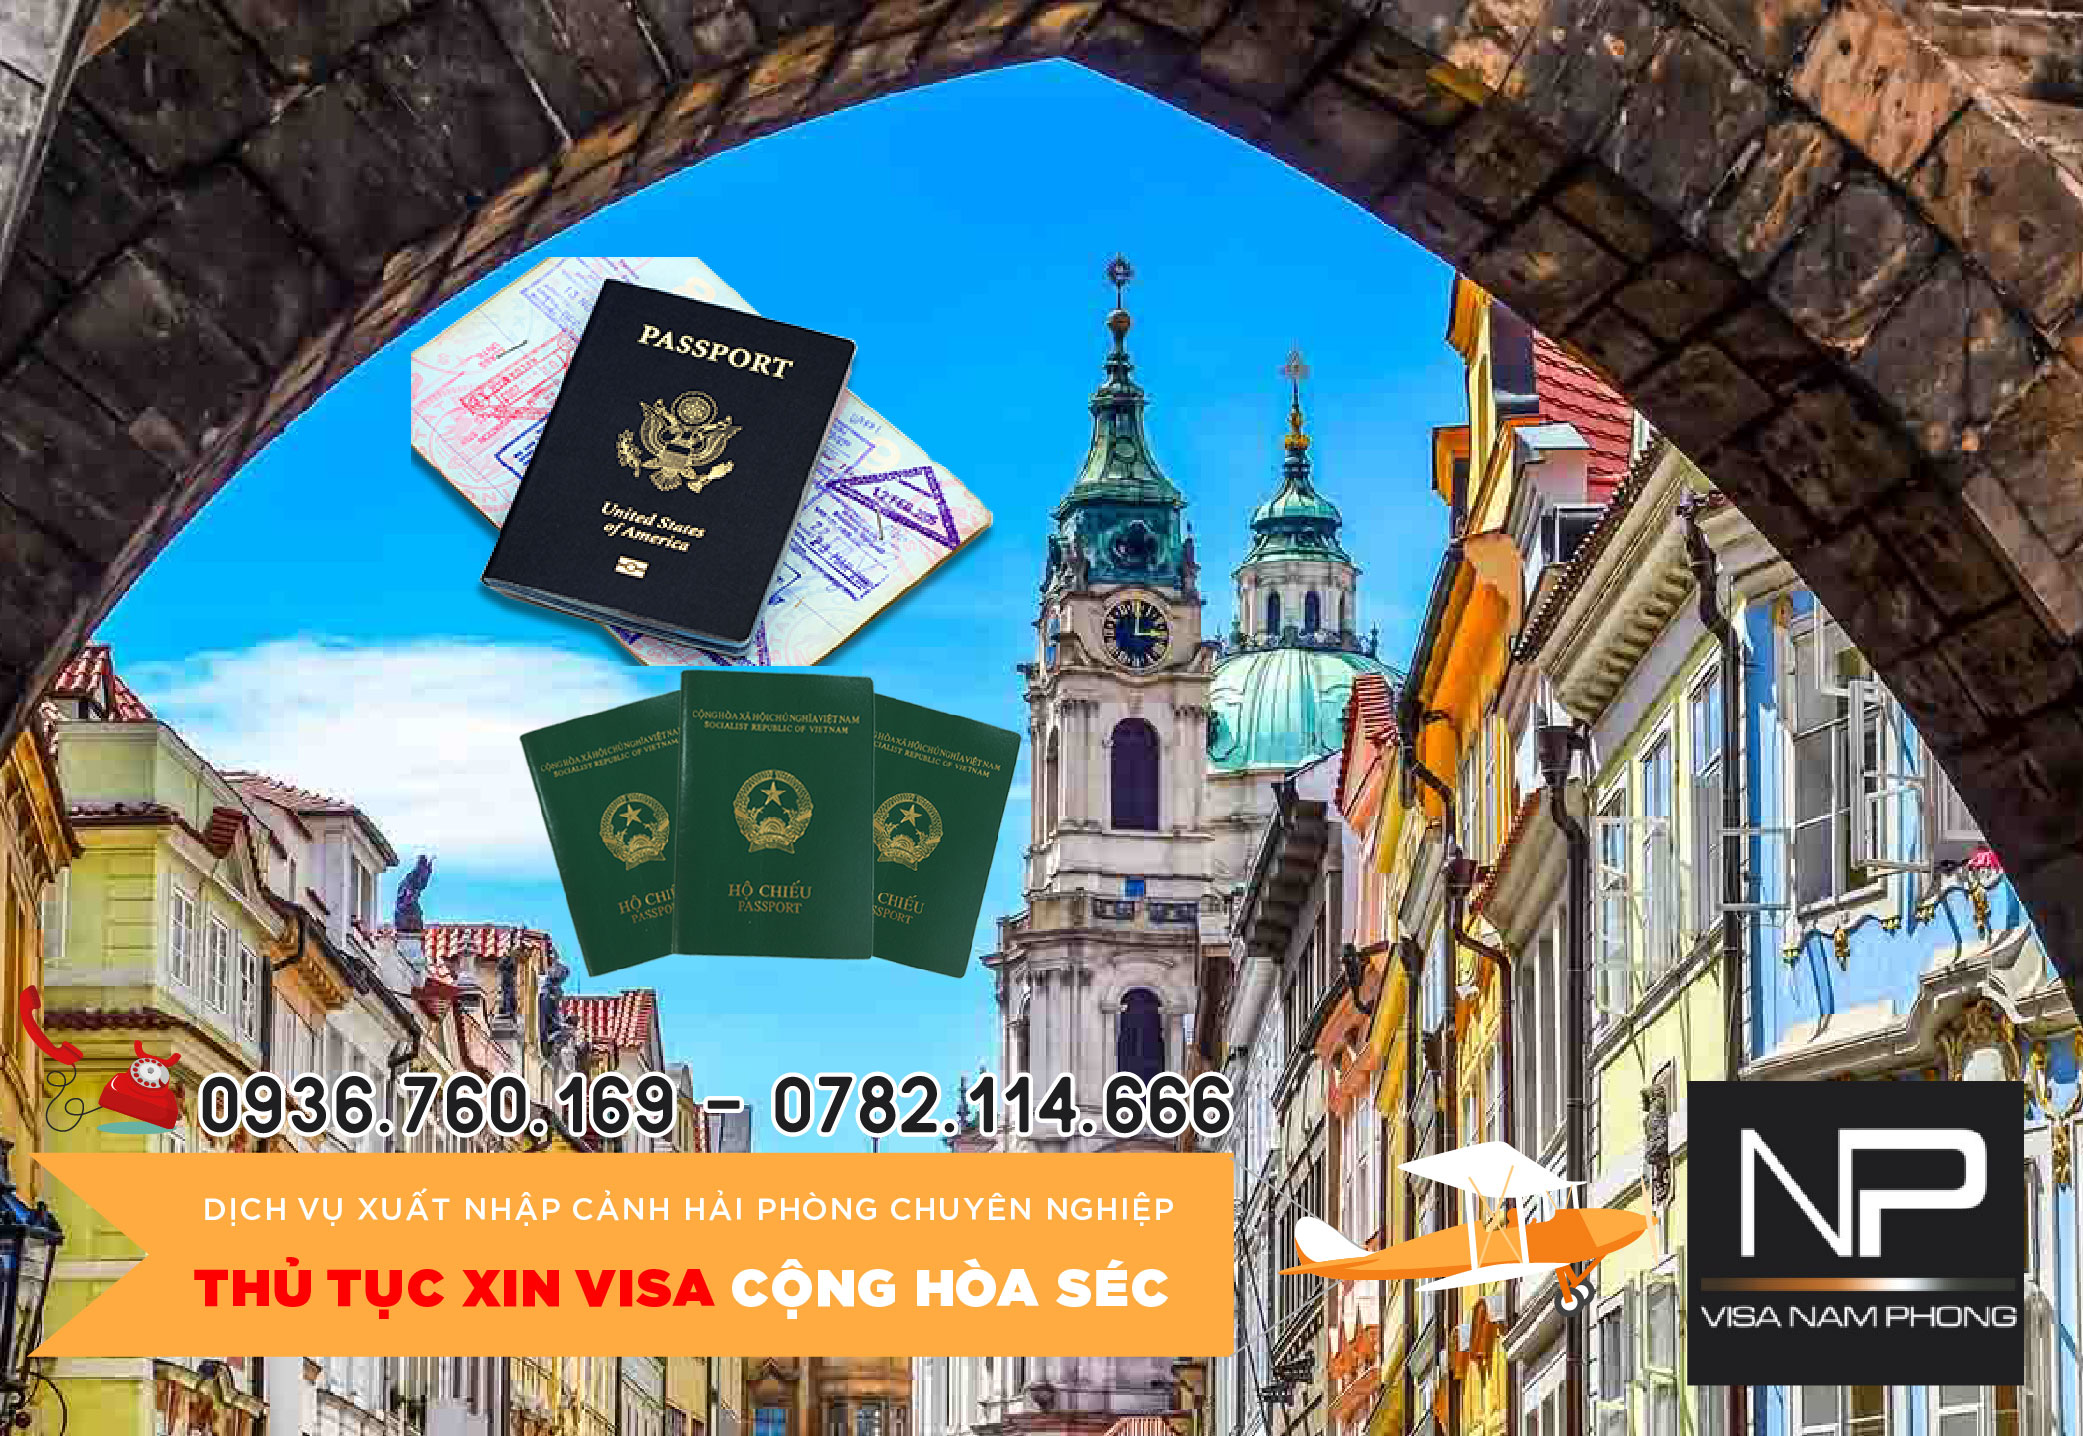 Thủ tục xin visa Cộng hòa Séc tại Hải Phòng